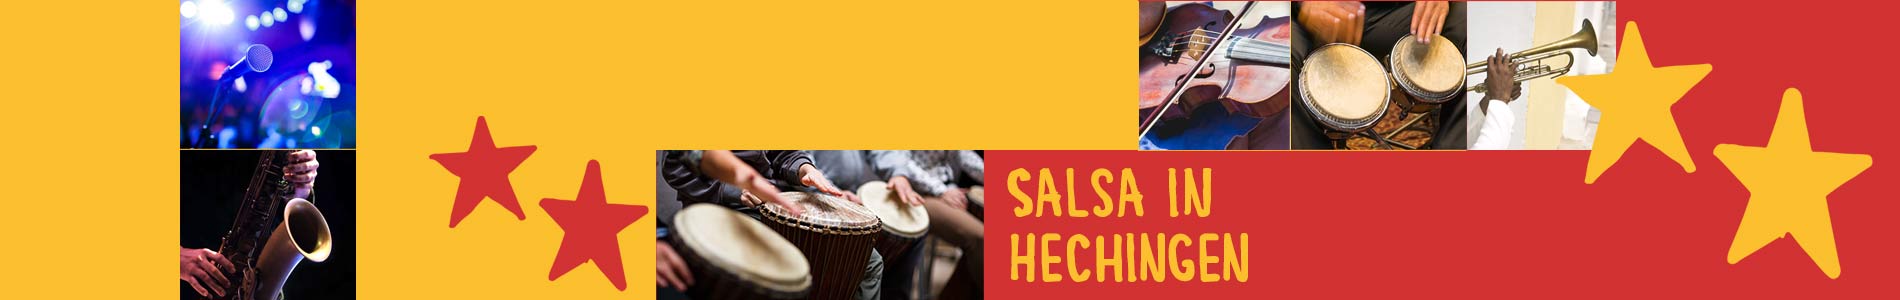 Salsa in Hechingen – Salsa lernen und tanzen, Tanzkurse, Partys, Veranstaltungen